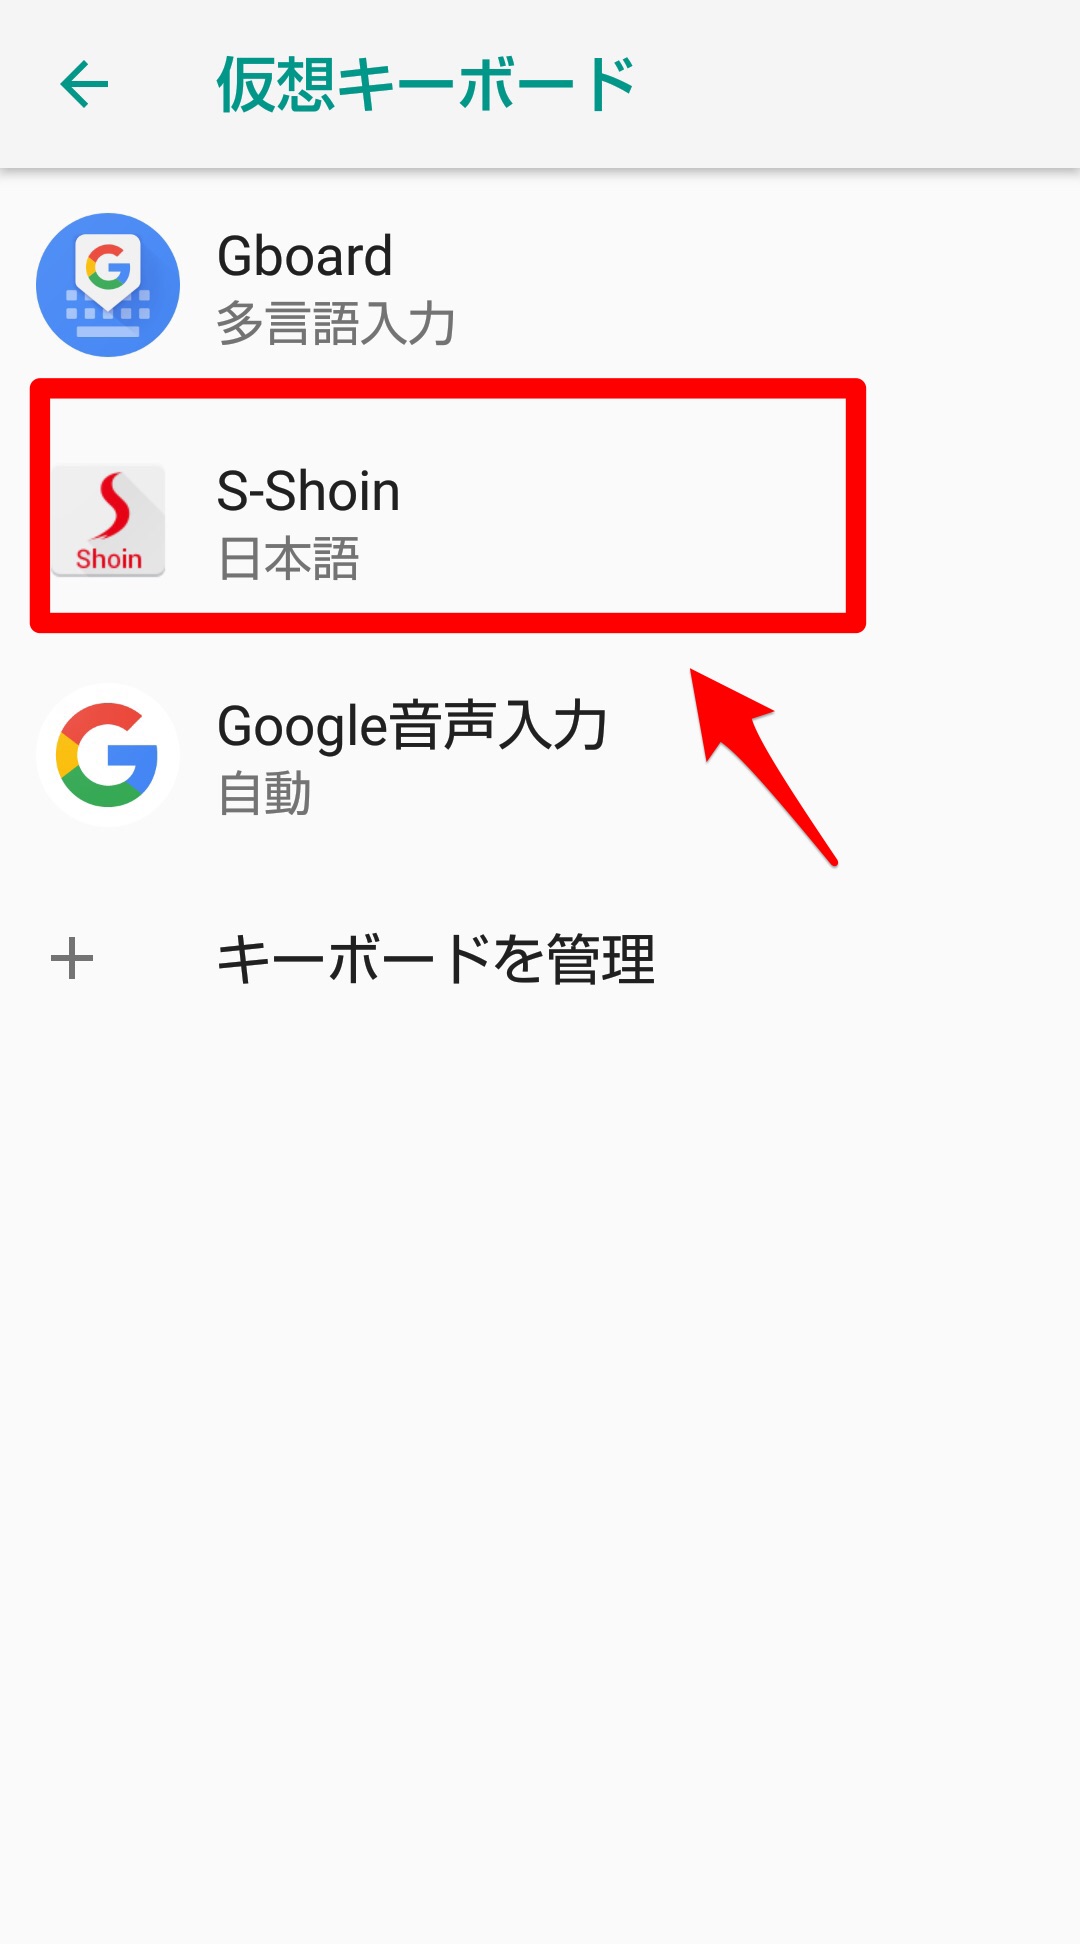 S-Shoin